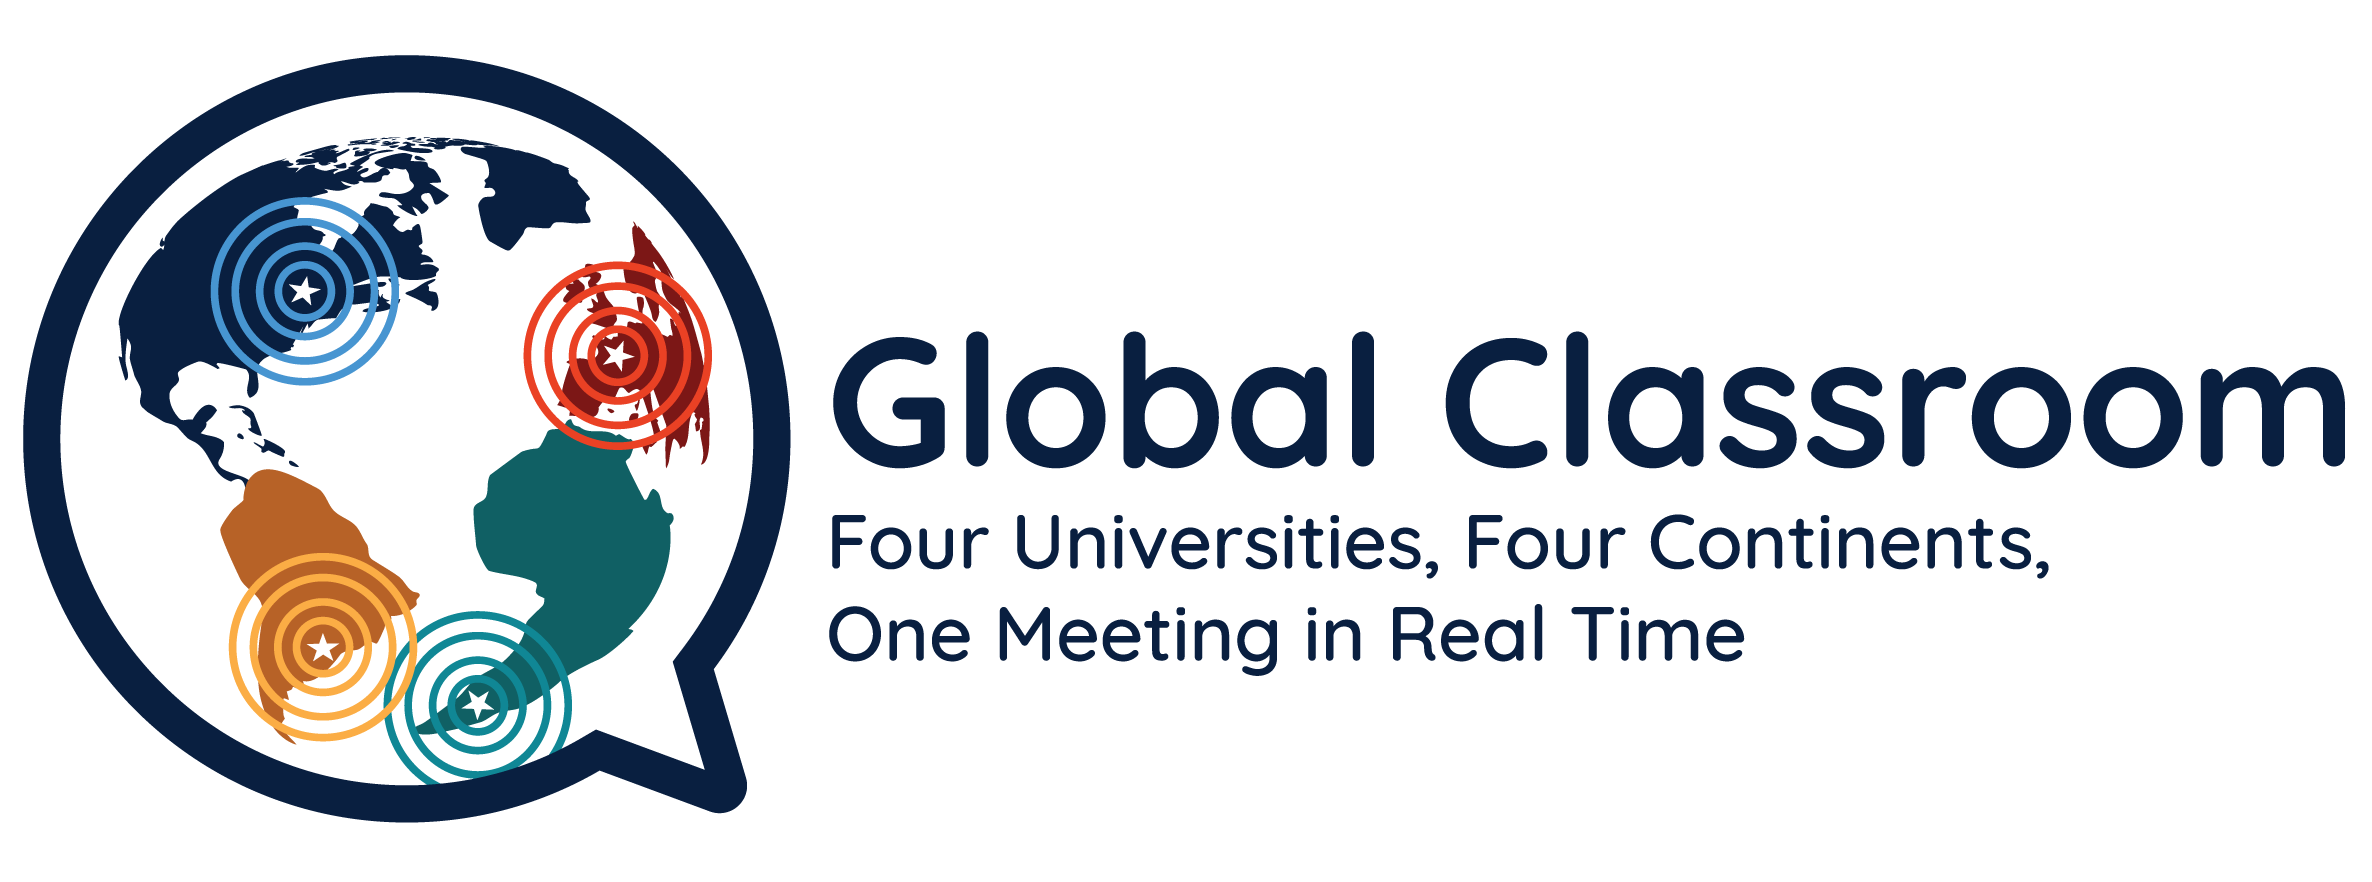 globalClassroom4